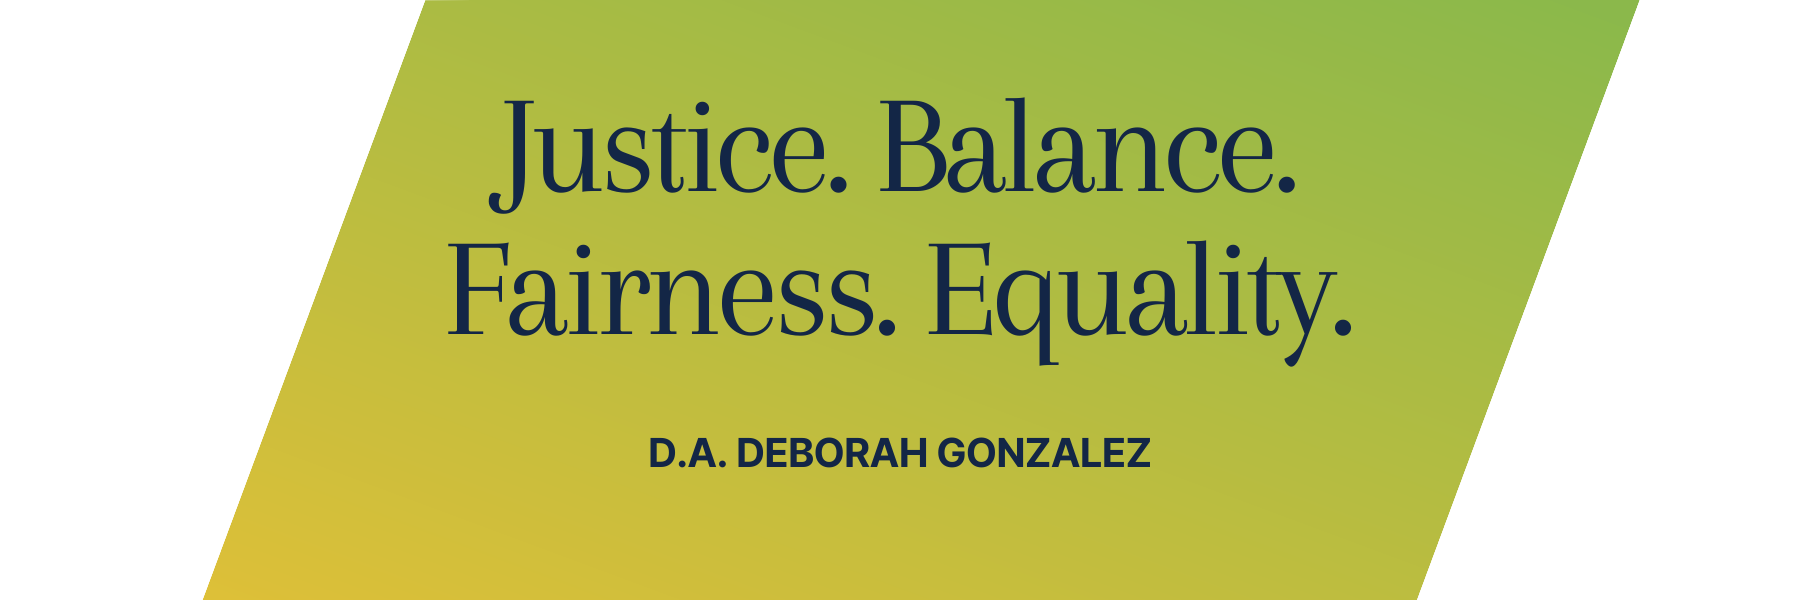 Justice. Balance. Fairness. Equality. -D.A. Deborah Gonzalez